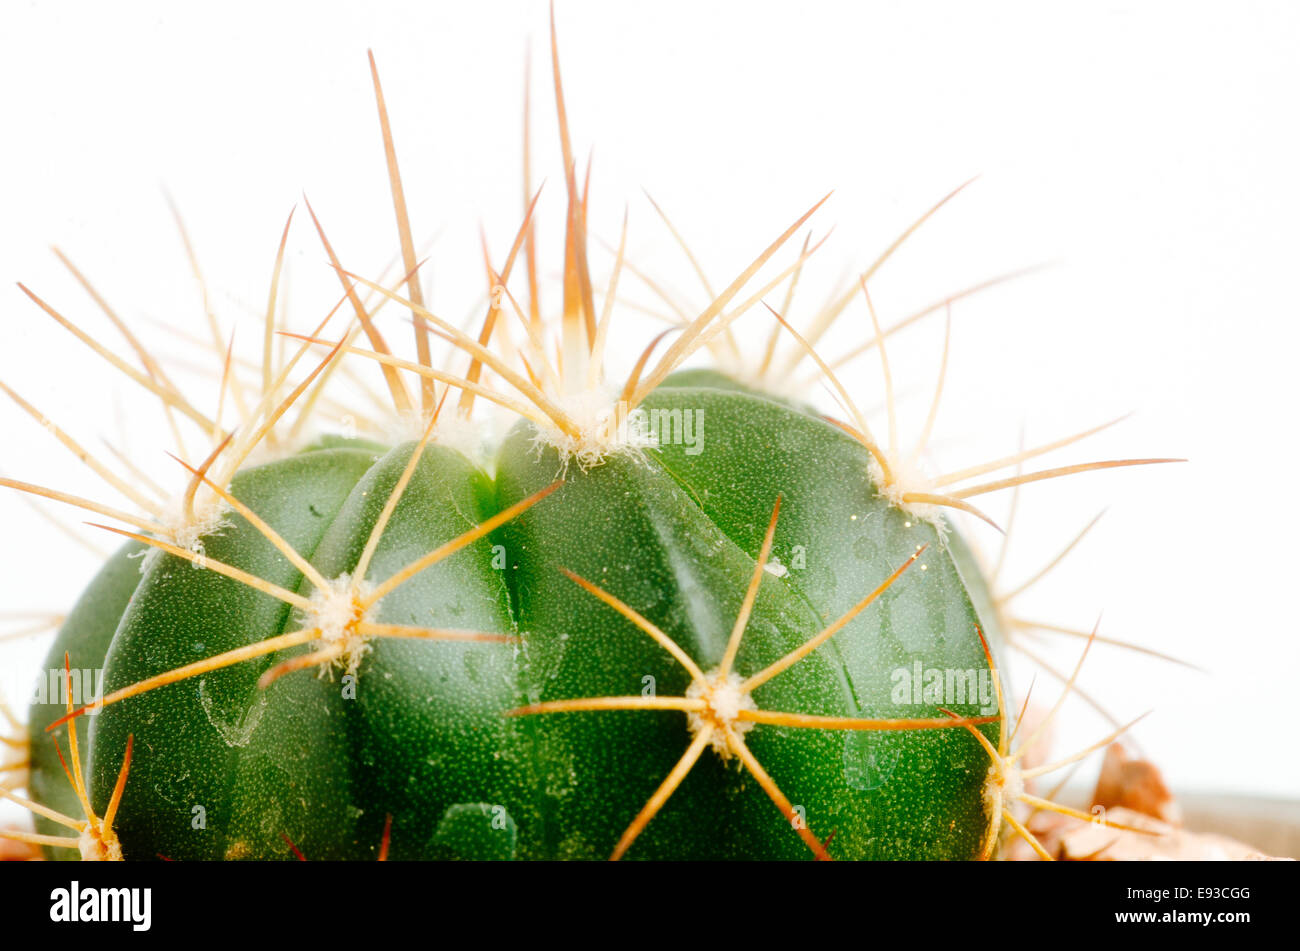 Detalles de desértico suculenta y plantas de cactus Foto de stock